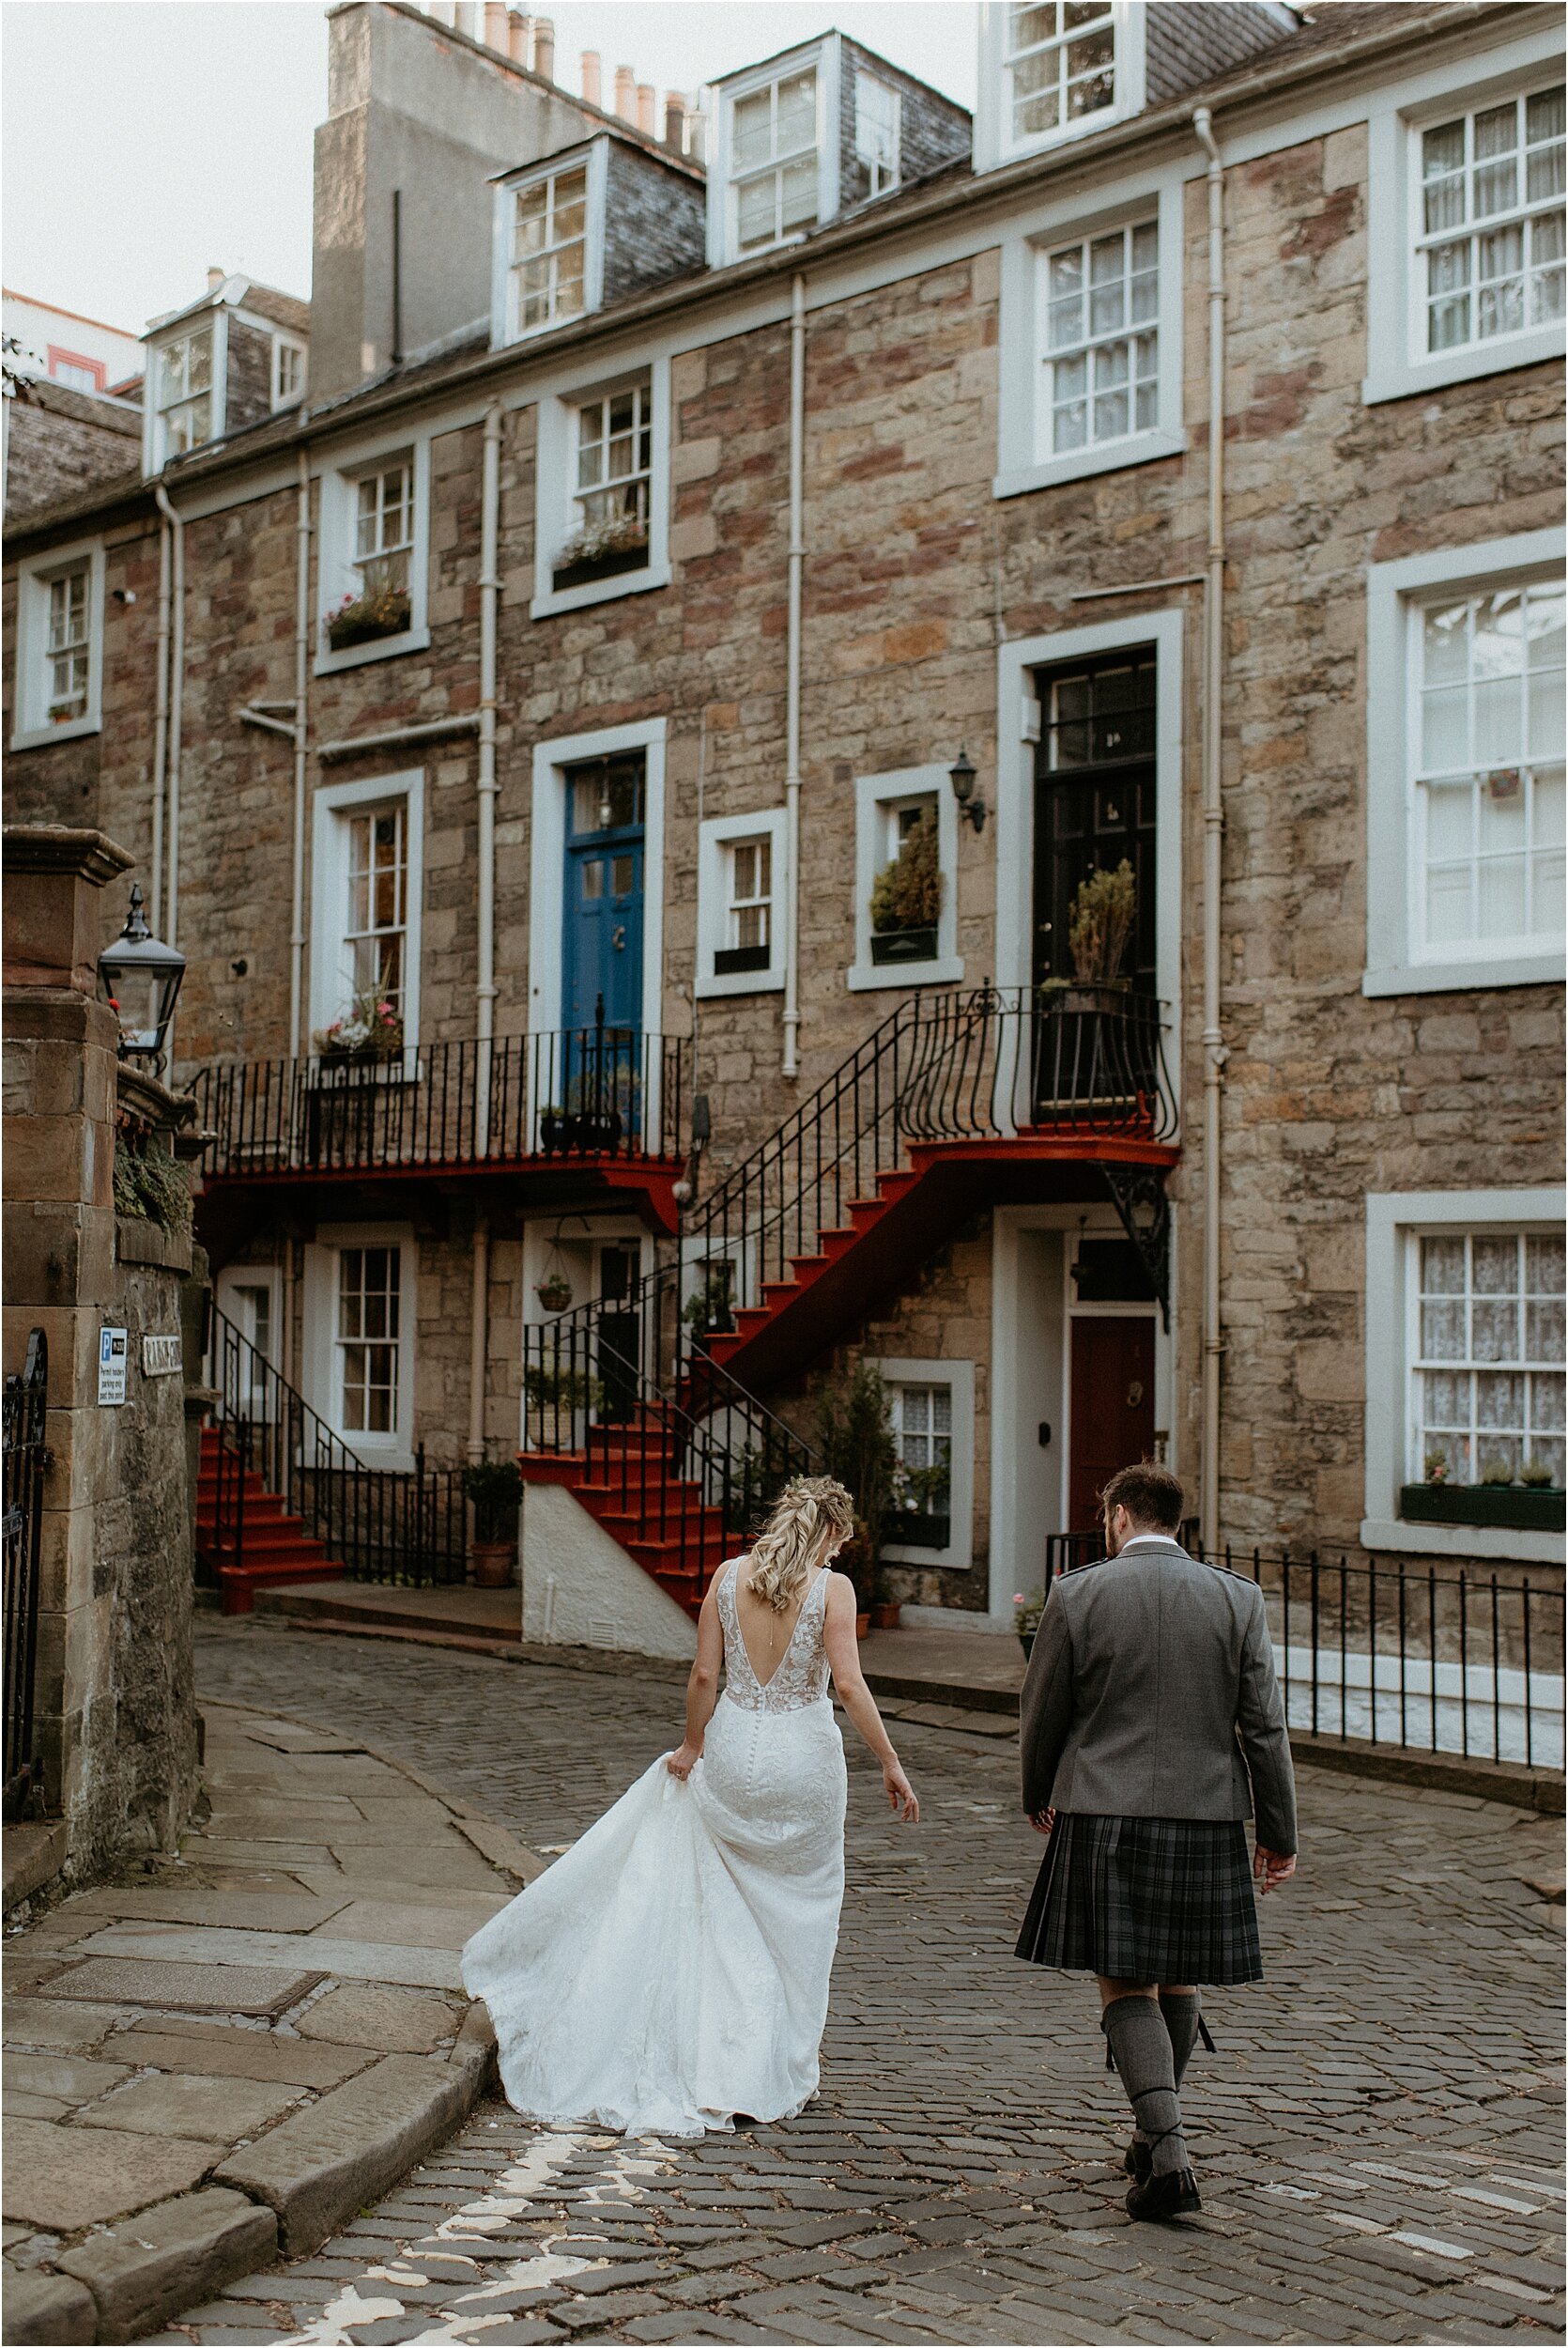 Timberyard-wedding-Edinburgh-75.jpg